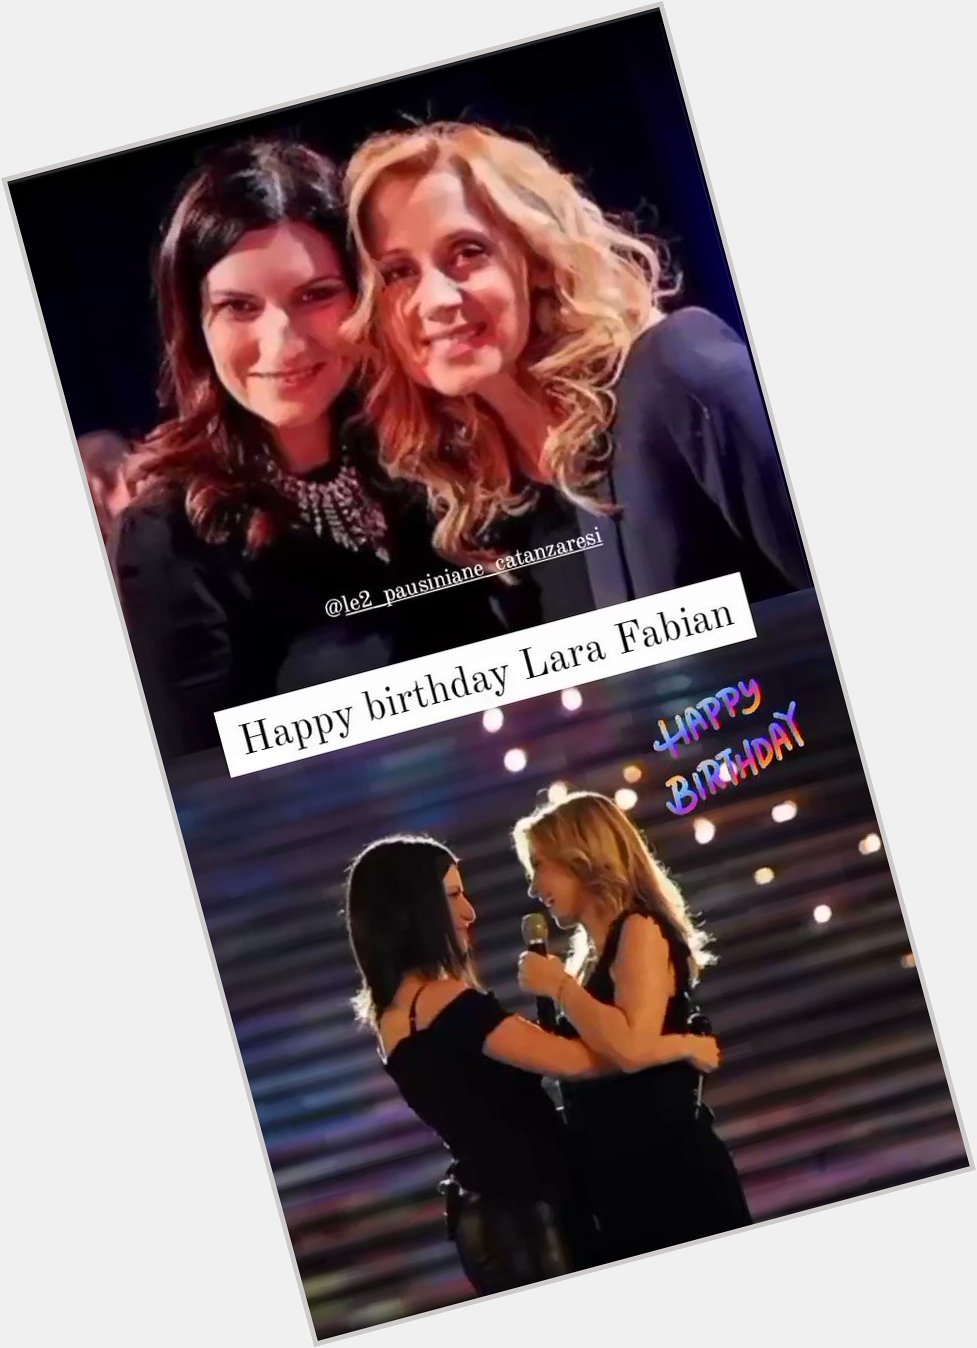 Happy birthday Lara Fabian     